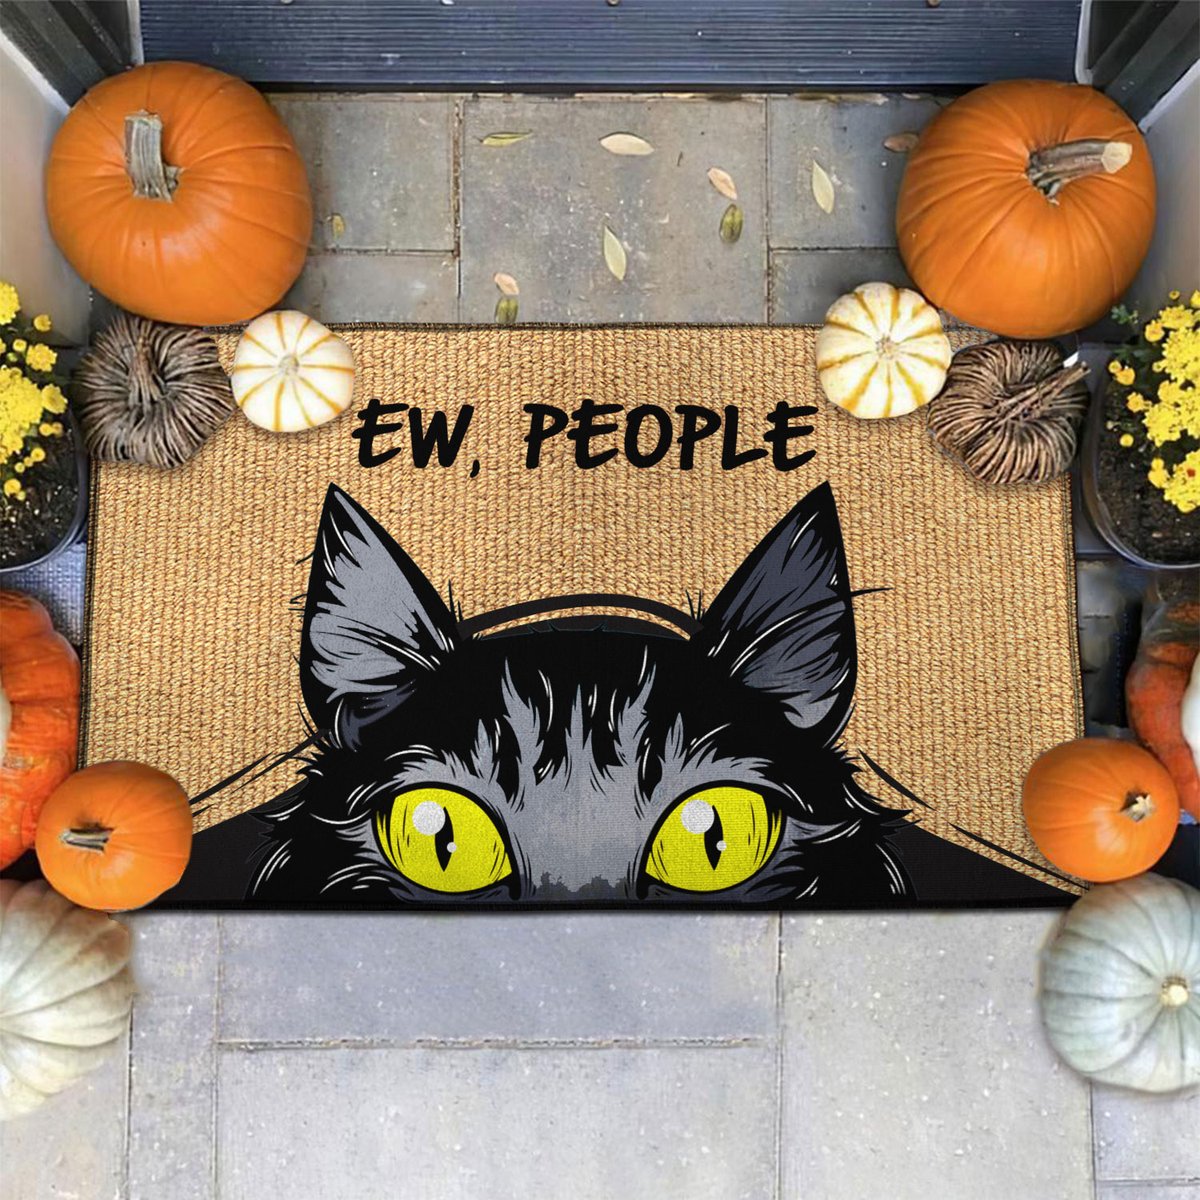 Black cat ew people doormat 5